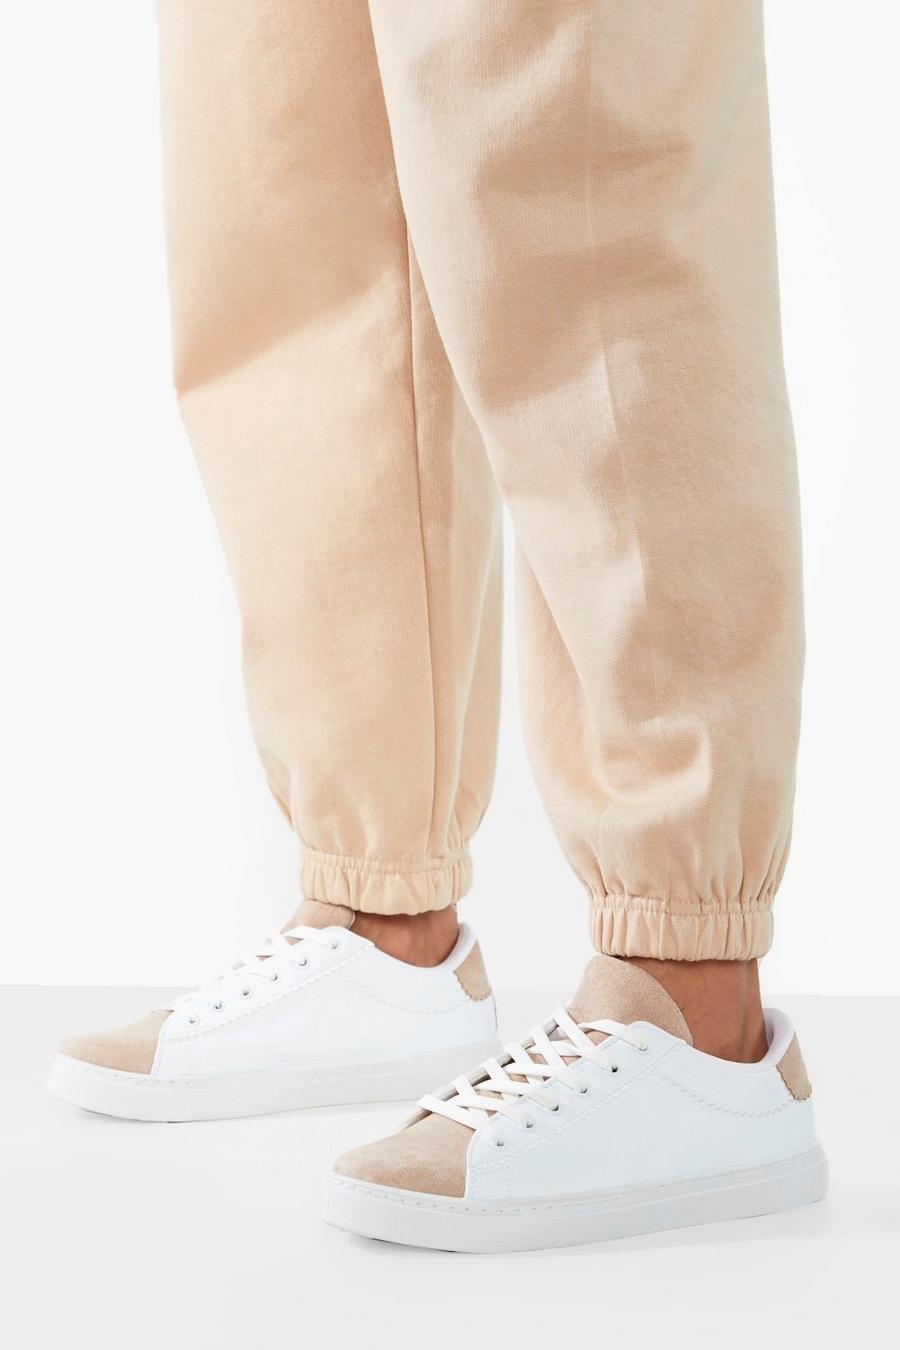 לבן white נעלי ספורט עם שרוכים וגימור בצבעים מנוגדים עם עיטור מסולסל